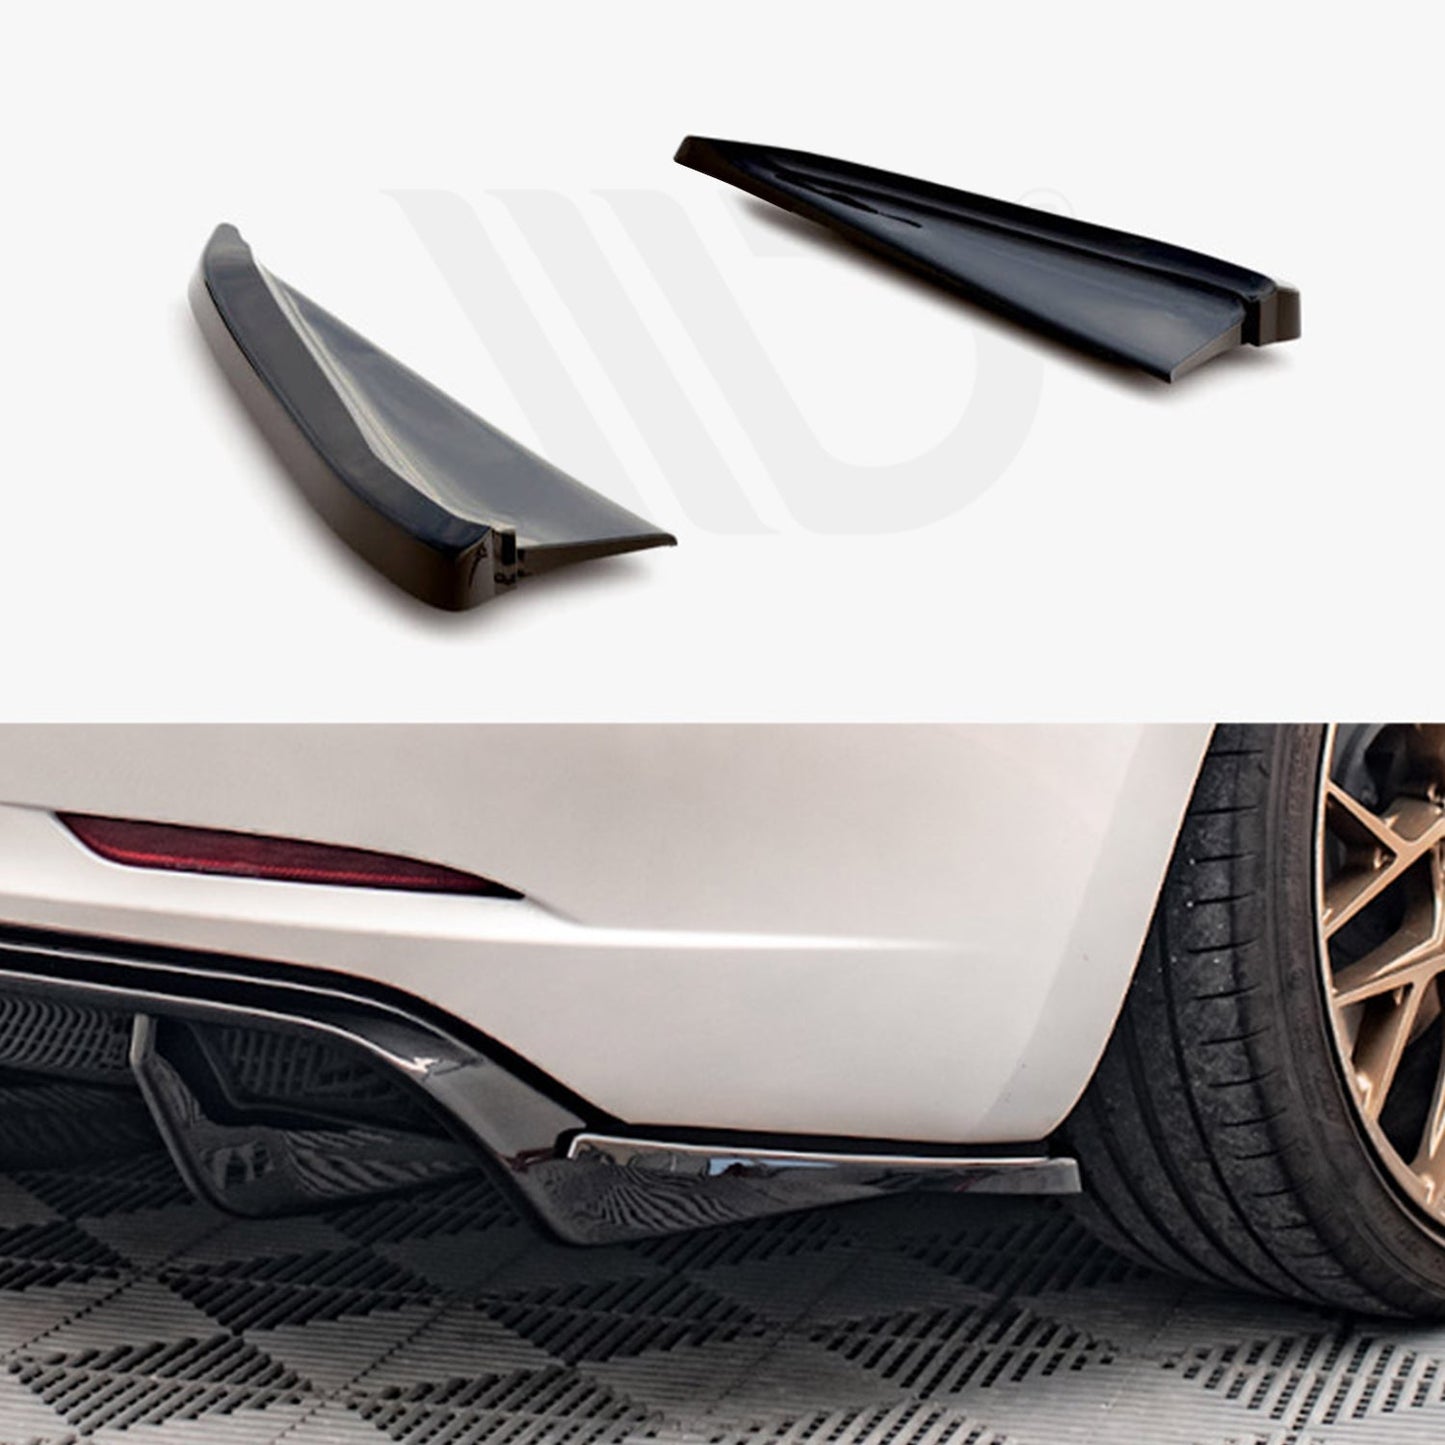 MAXTON® DESIGN Rear Side Splitters / Version 2 for Tesla Model 3